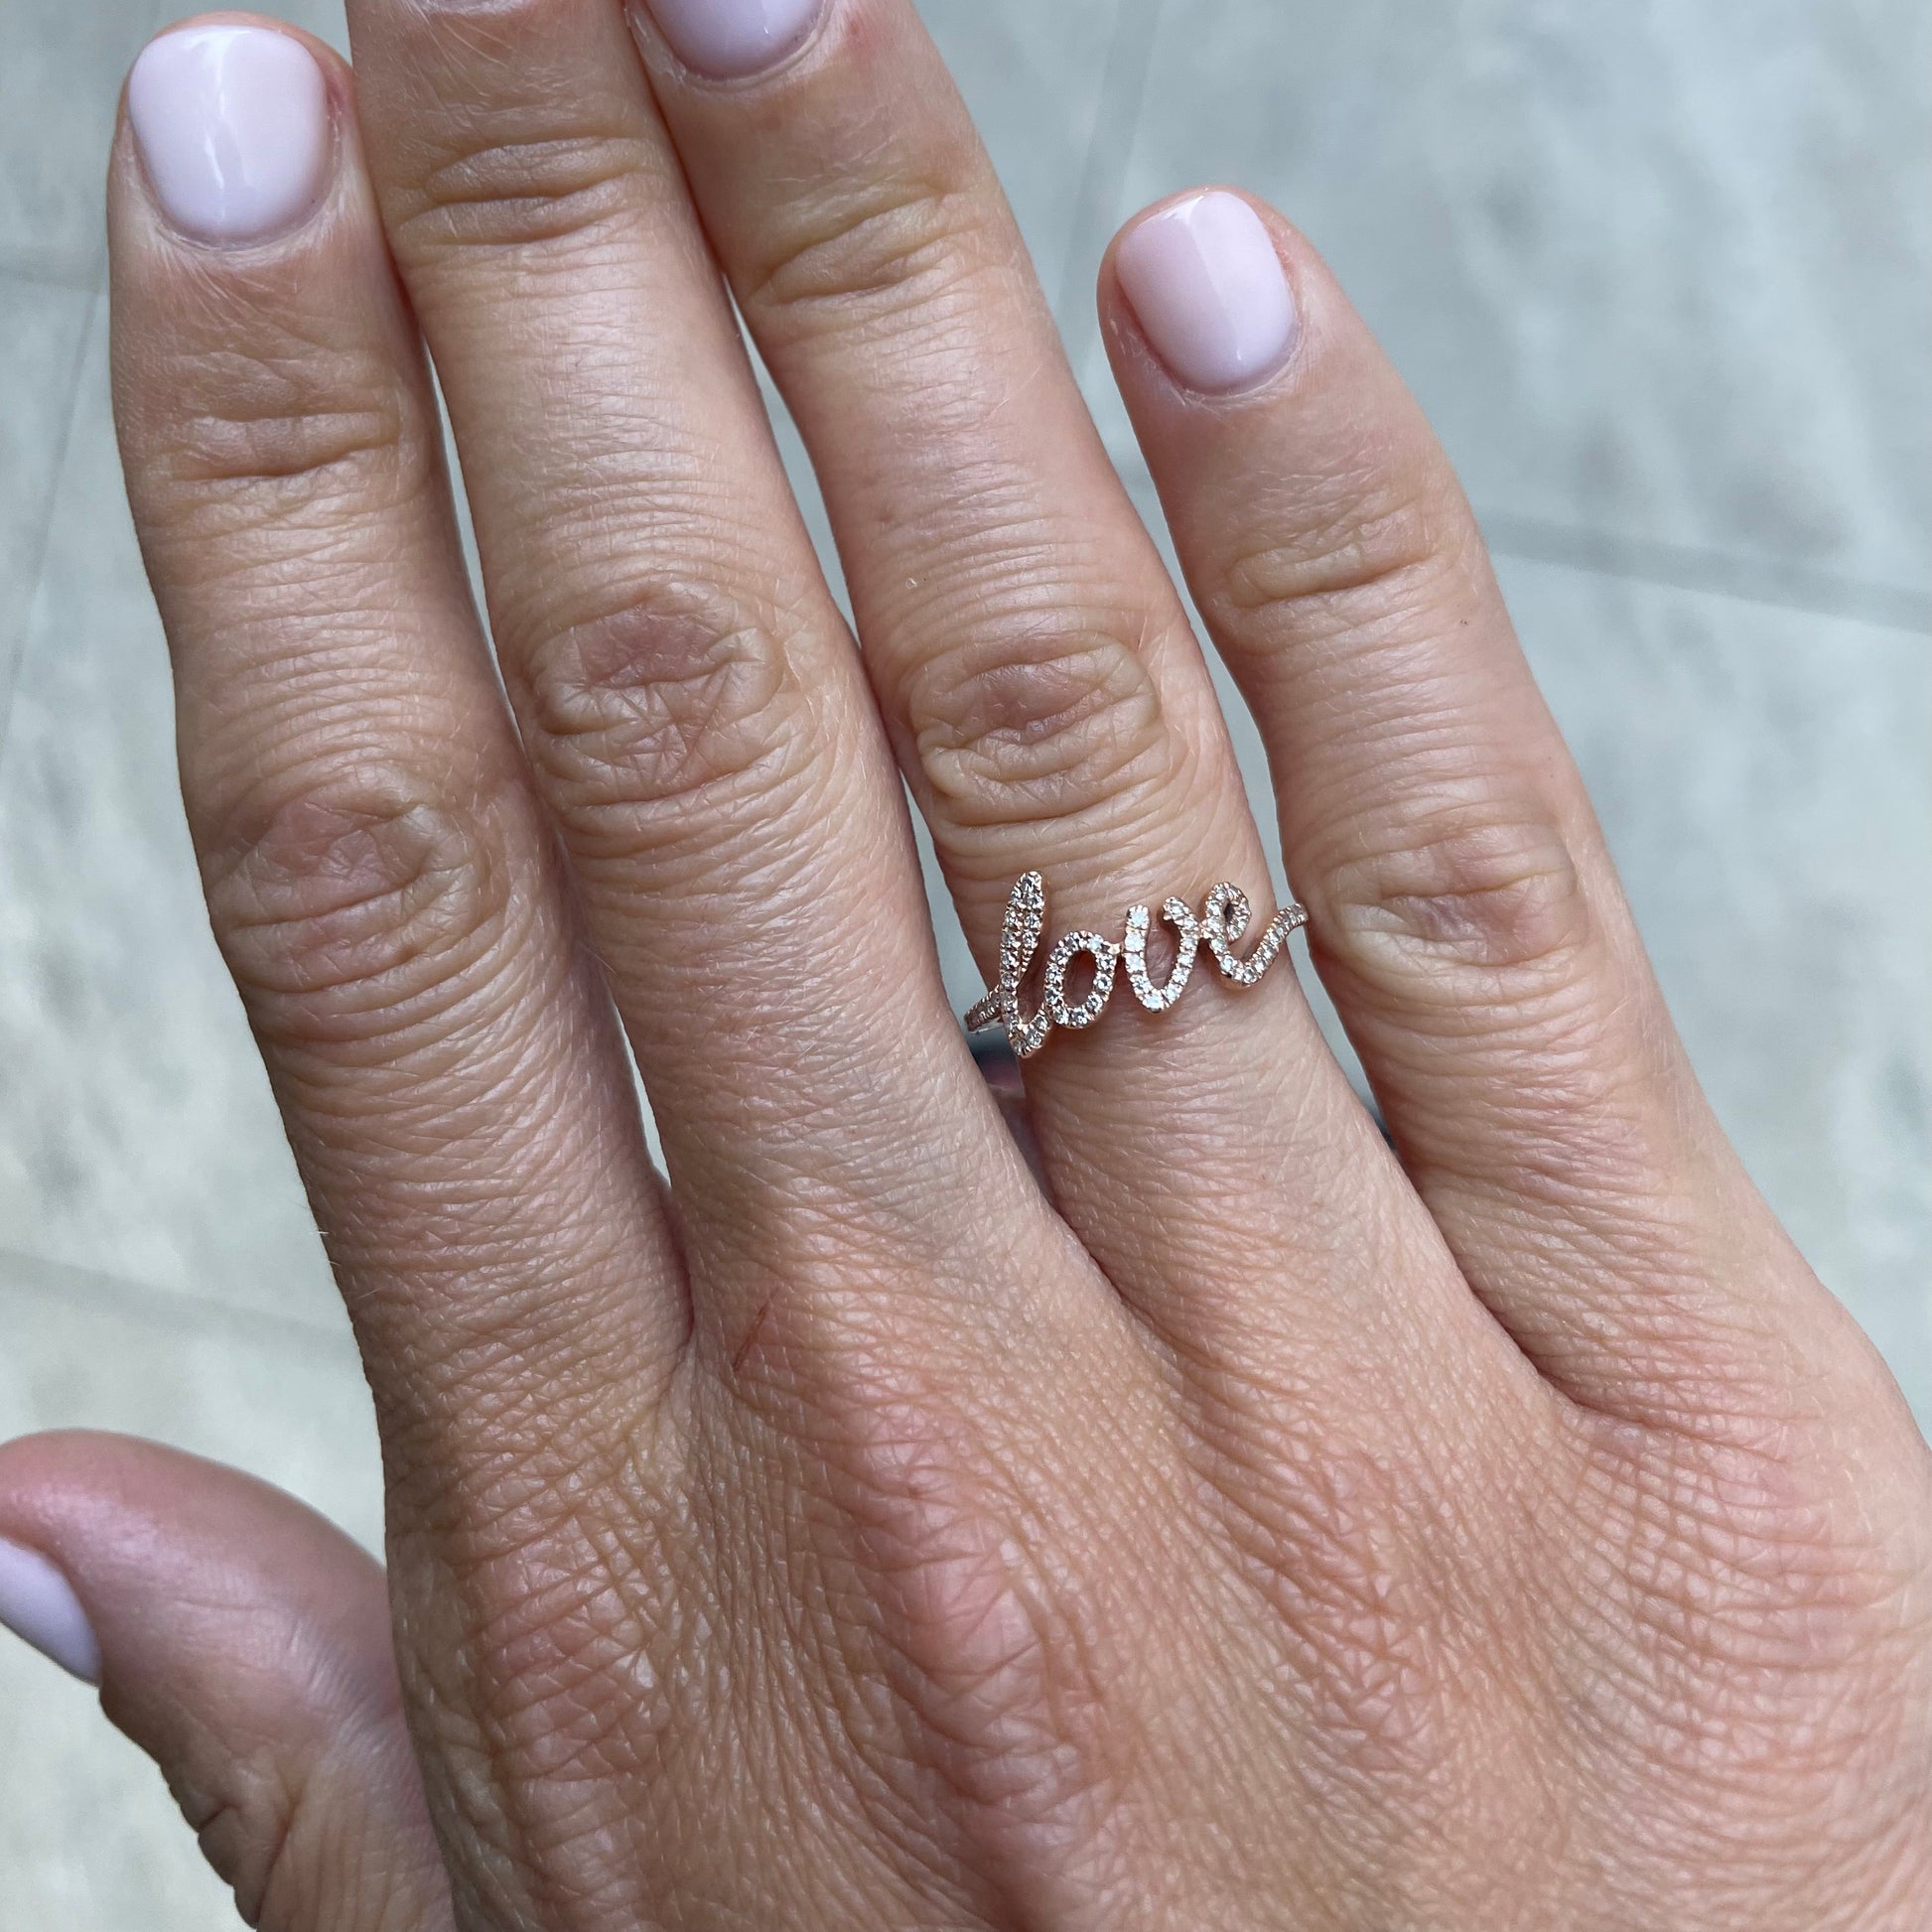 "Love" Pavé Diamond Ring - - Jewelry - Goldie Paris Jewelry - Pavé Ring statement